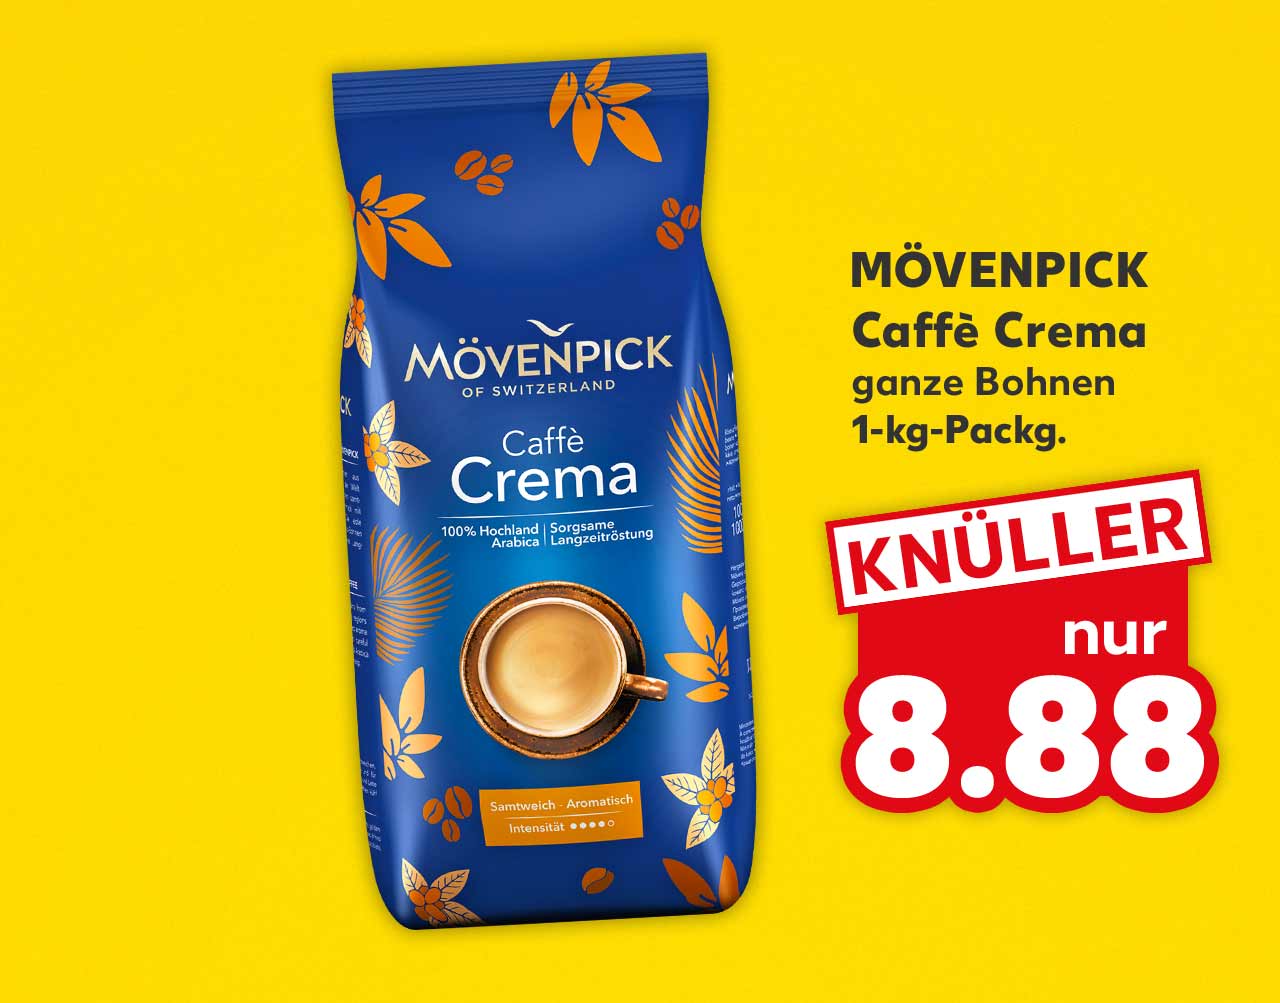 Mövenpick Caffè Crema, ganze Bohnen, 1-kg-Packg. für 8.88 Euro